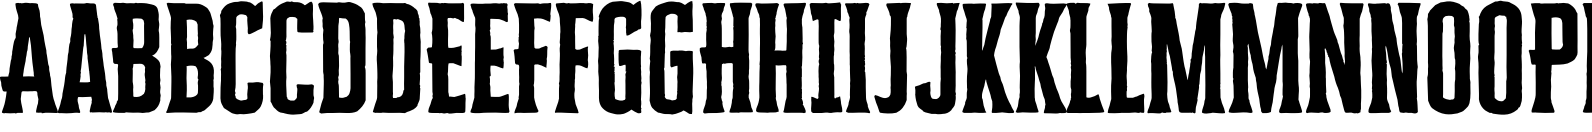 Cheddar Gothic Serif